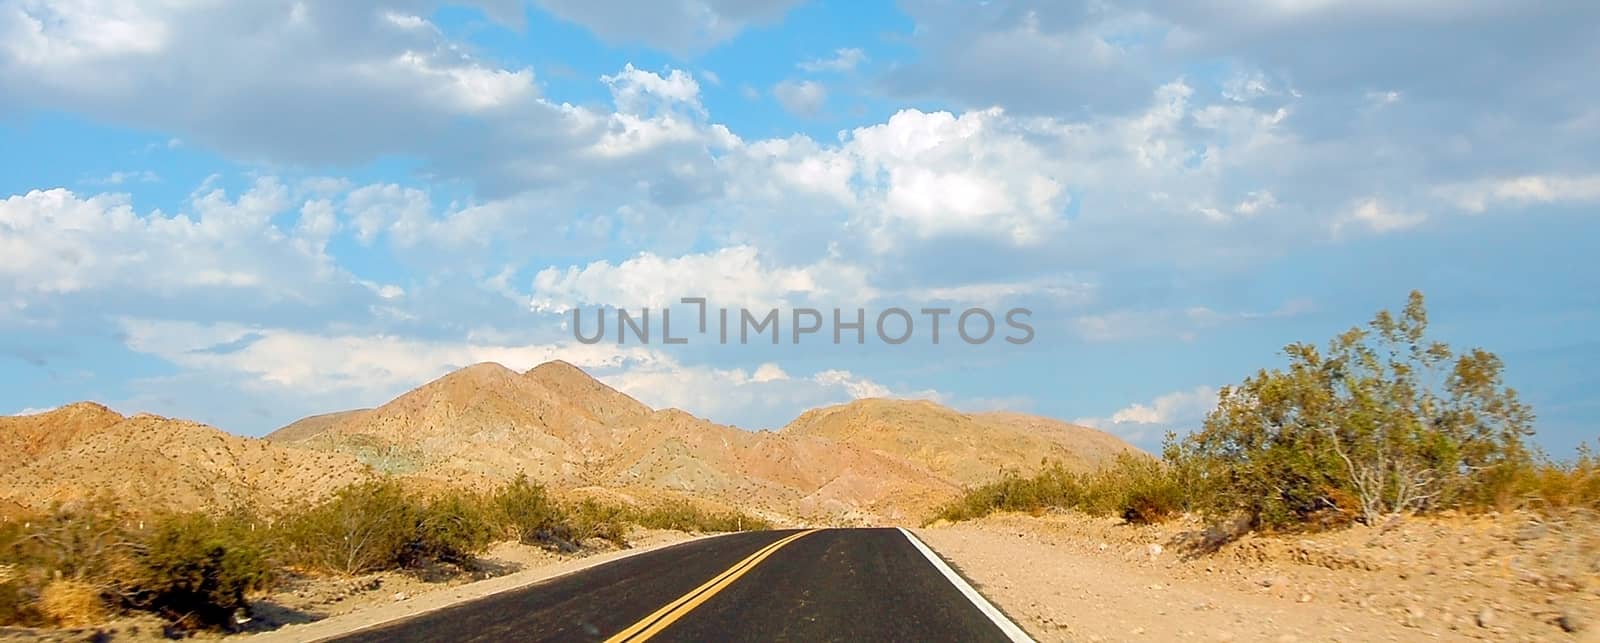 highway road in a dry desert landscape